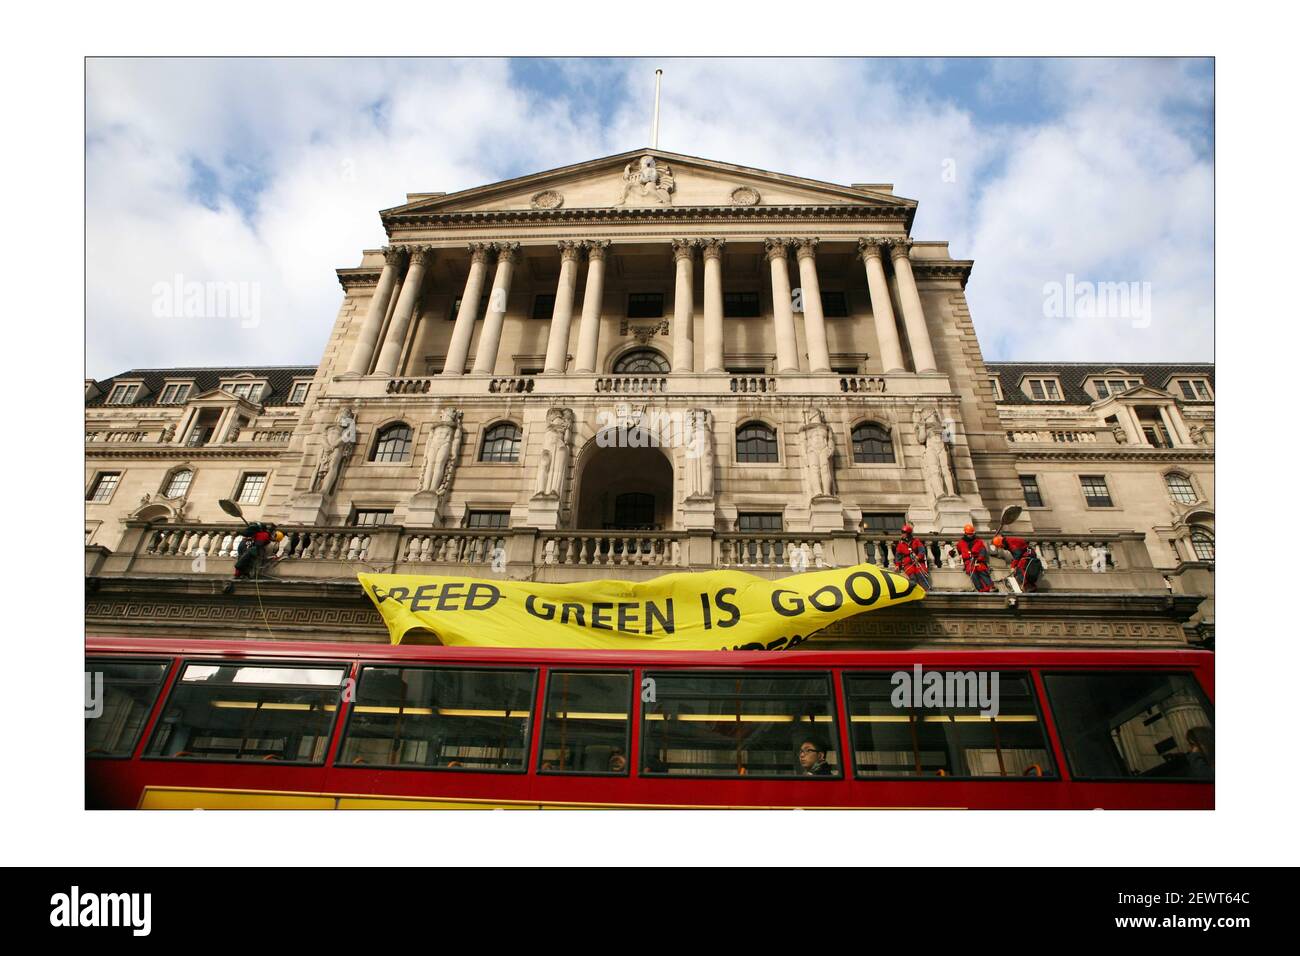 Les militants de Greenpeace ont drapé une bannière de la Banque d'Angleterre le 24 novembre 2008 dans la ville de Londres. Le jour où le chancelier de l'Échiquier présentera un rapport prébudgétaire au Parlement.photo de David Sandison l'indépendant Banque D'Images